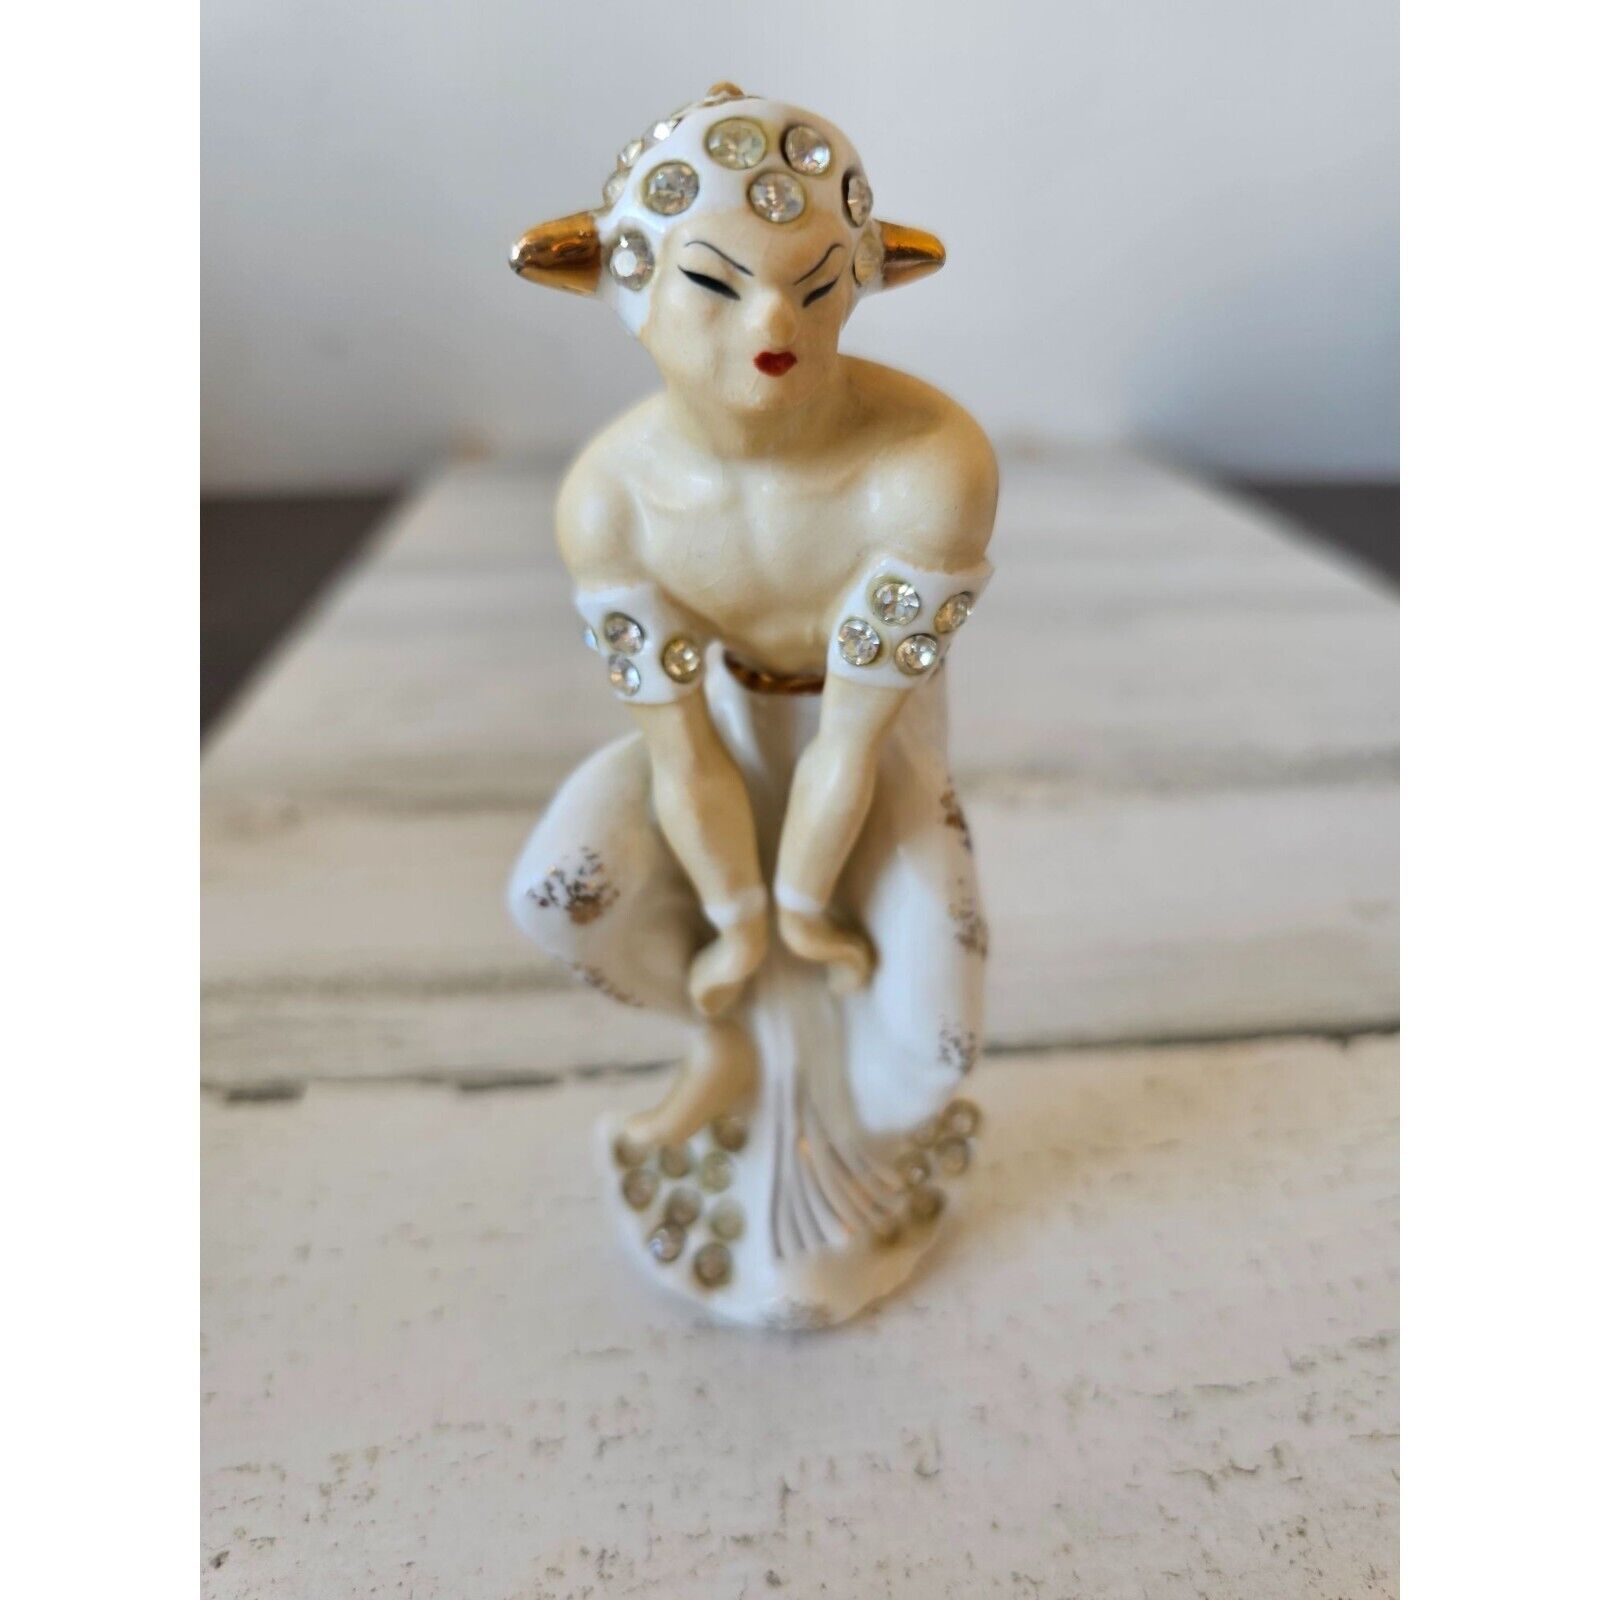 Vintage faun satyr goat mythical boy geisha rhinestone figurine statue unique